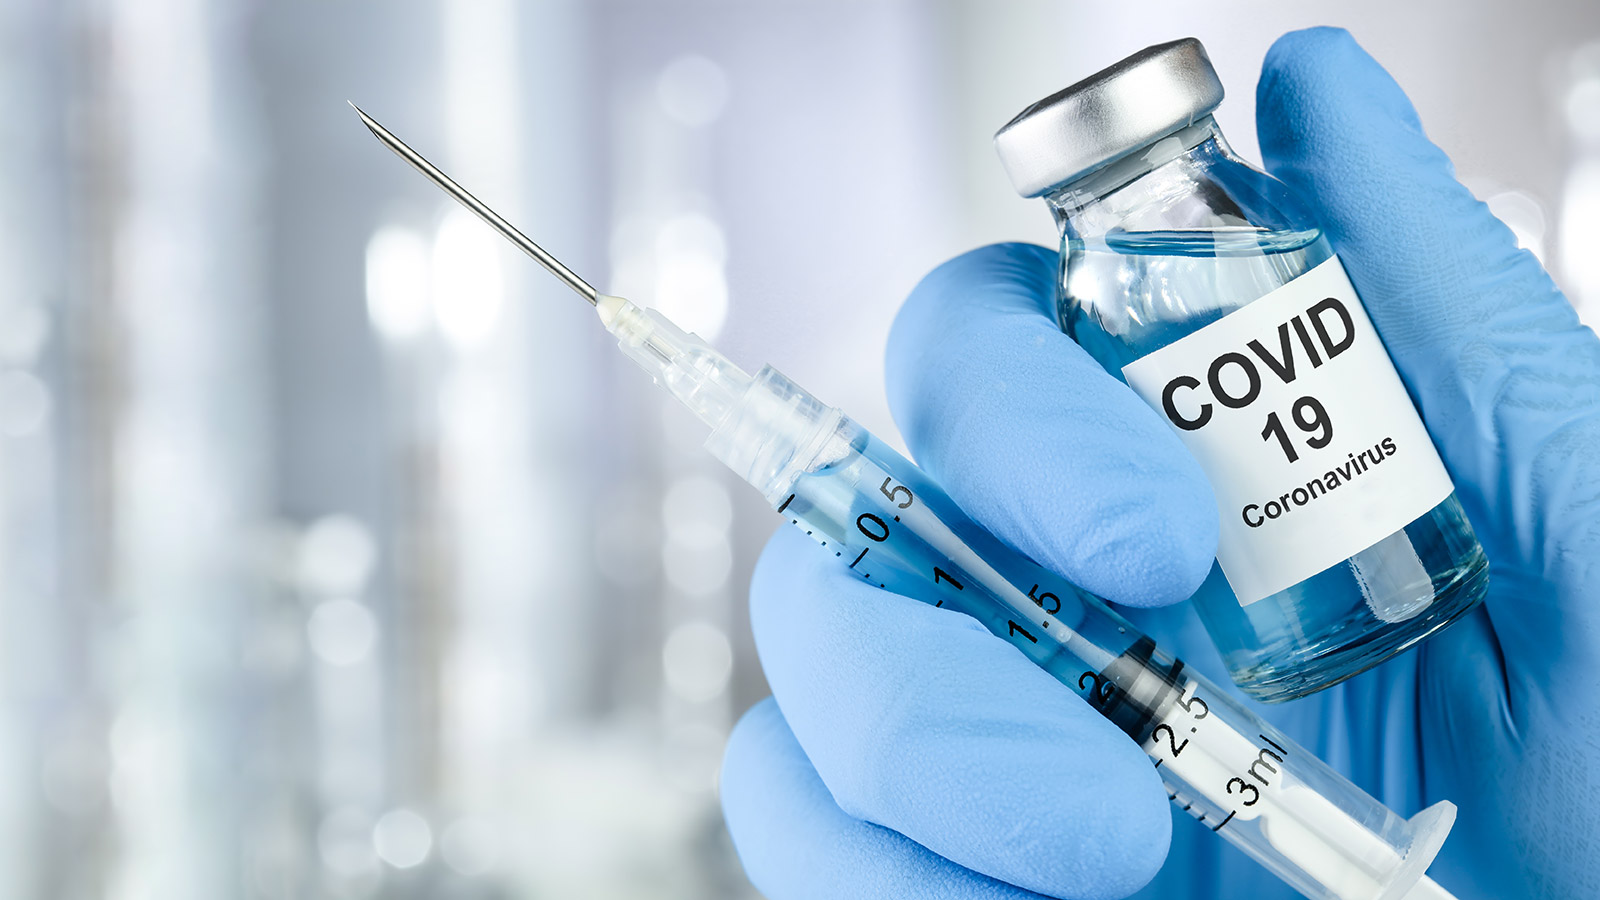 Policía bloqueó 25 páginas web que vendían vacunas falsas contra el Covid-19